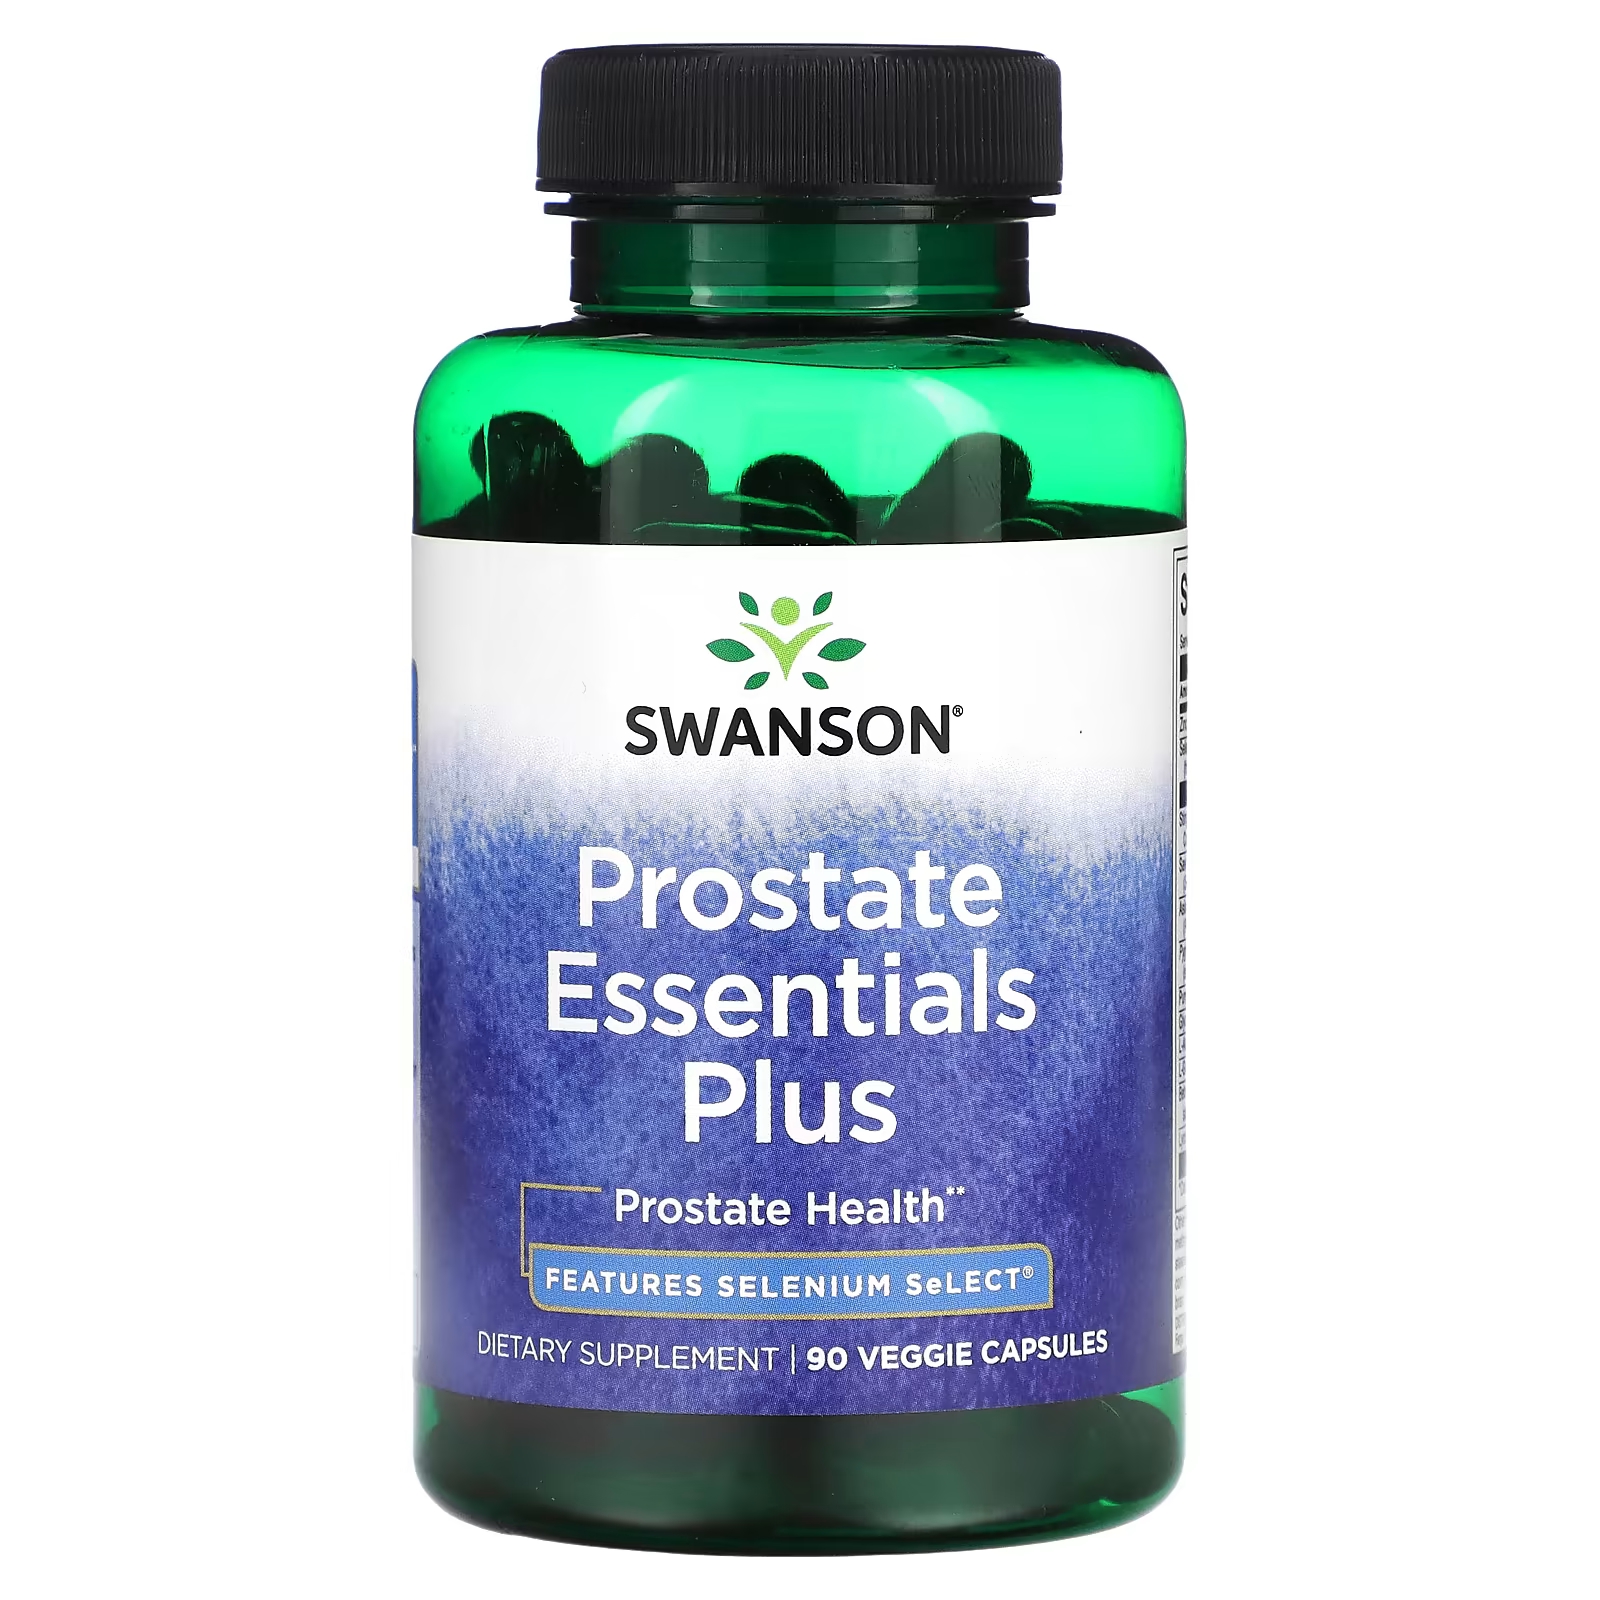 Пищевая добавка Swanson для здоровья простаты, 90 капсул swanson травяной комплекс для простаты с серой пигеумом и крапивой двудомной 200 капсул